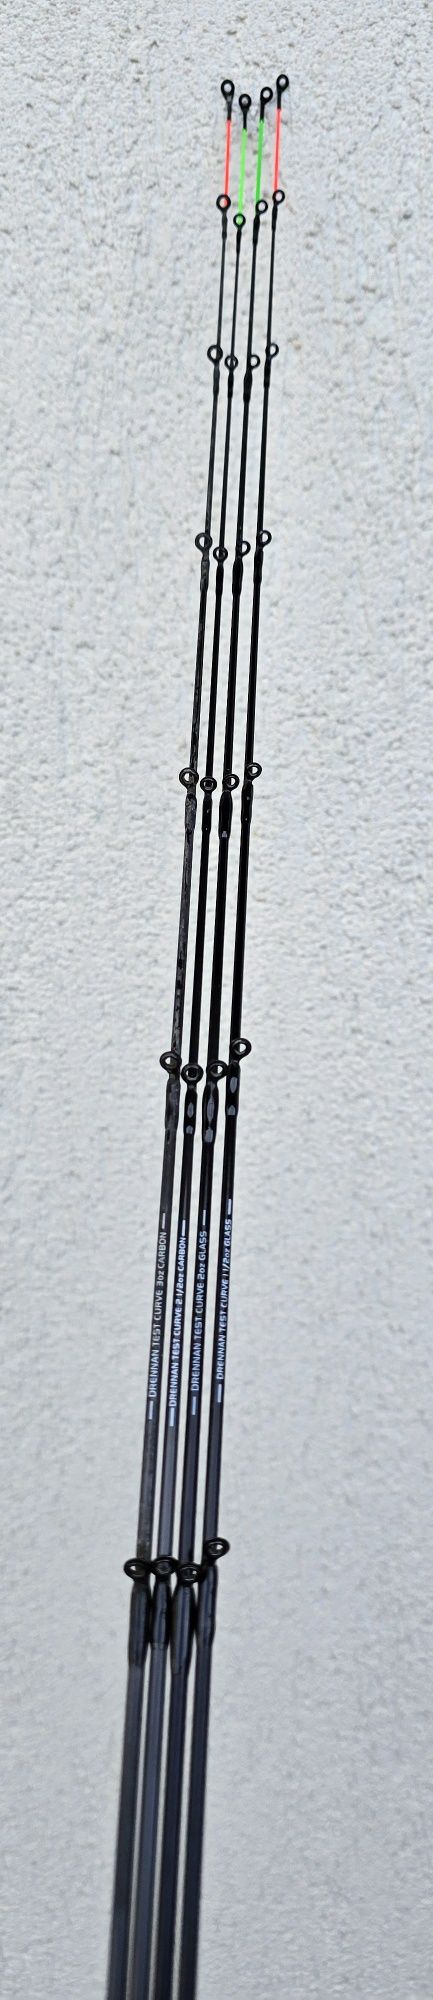 Lanseta Drennan Medium Feeder Combo 11`6-12`6FT (3.50-3.80M)